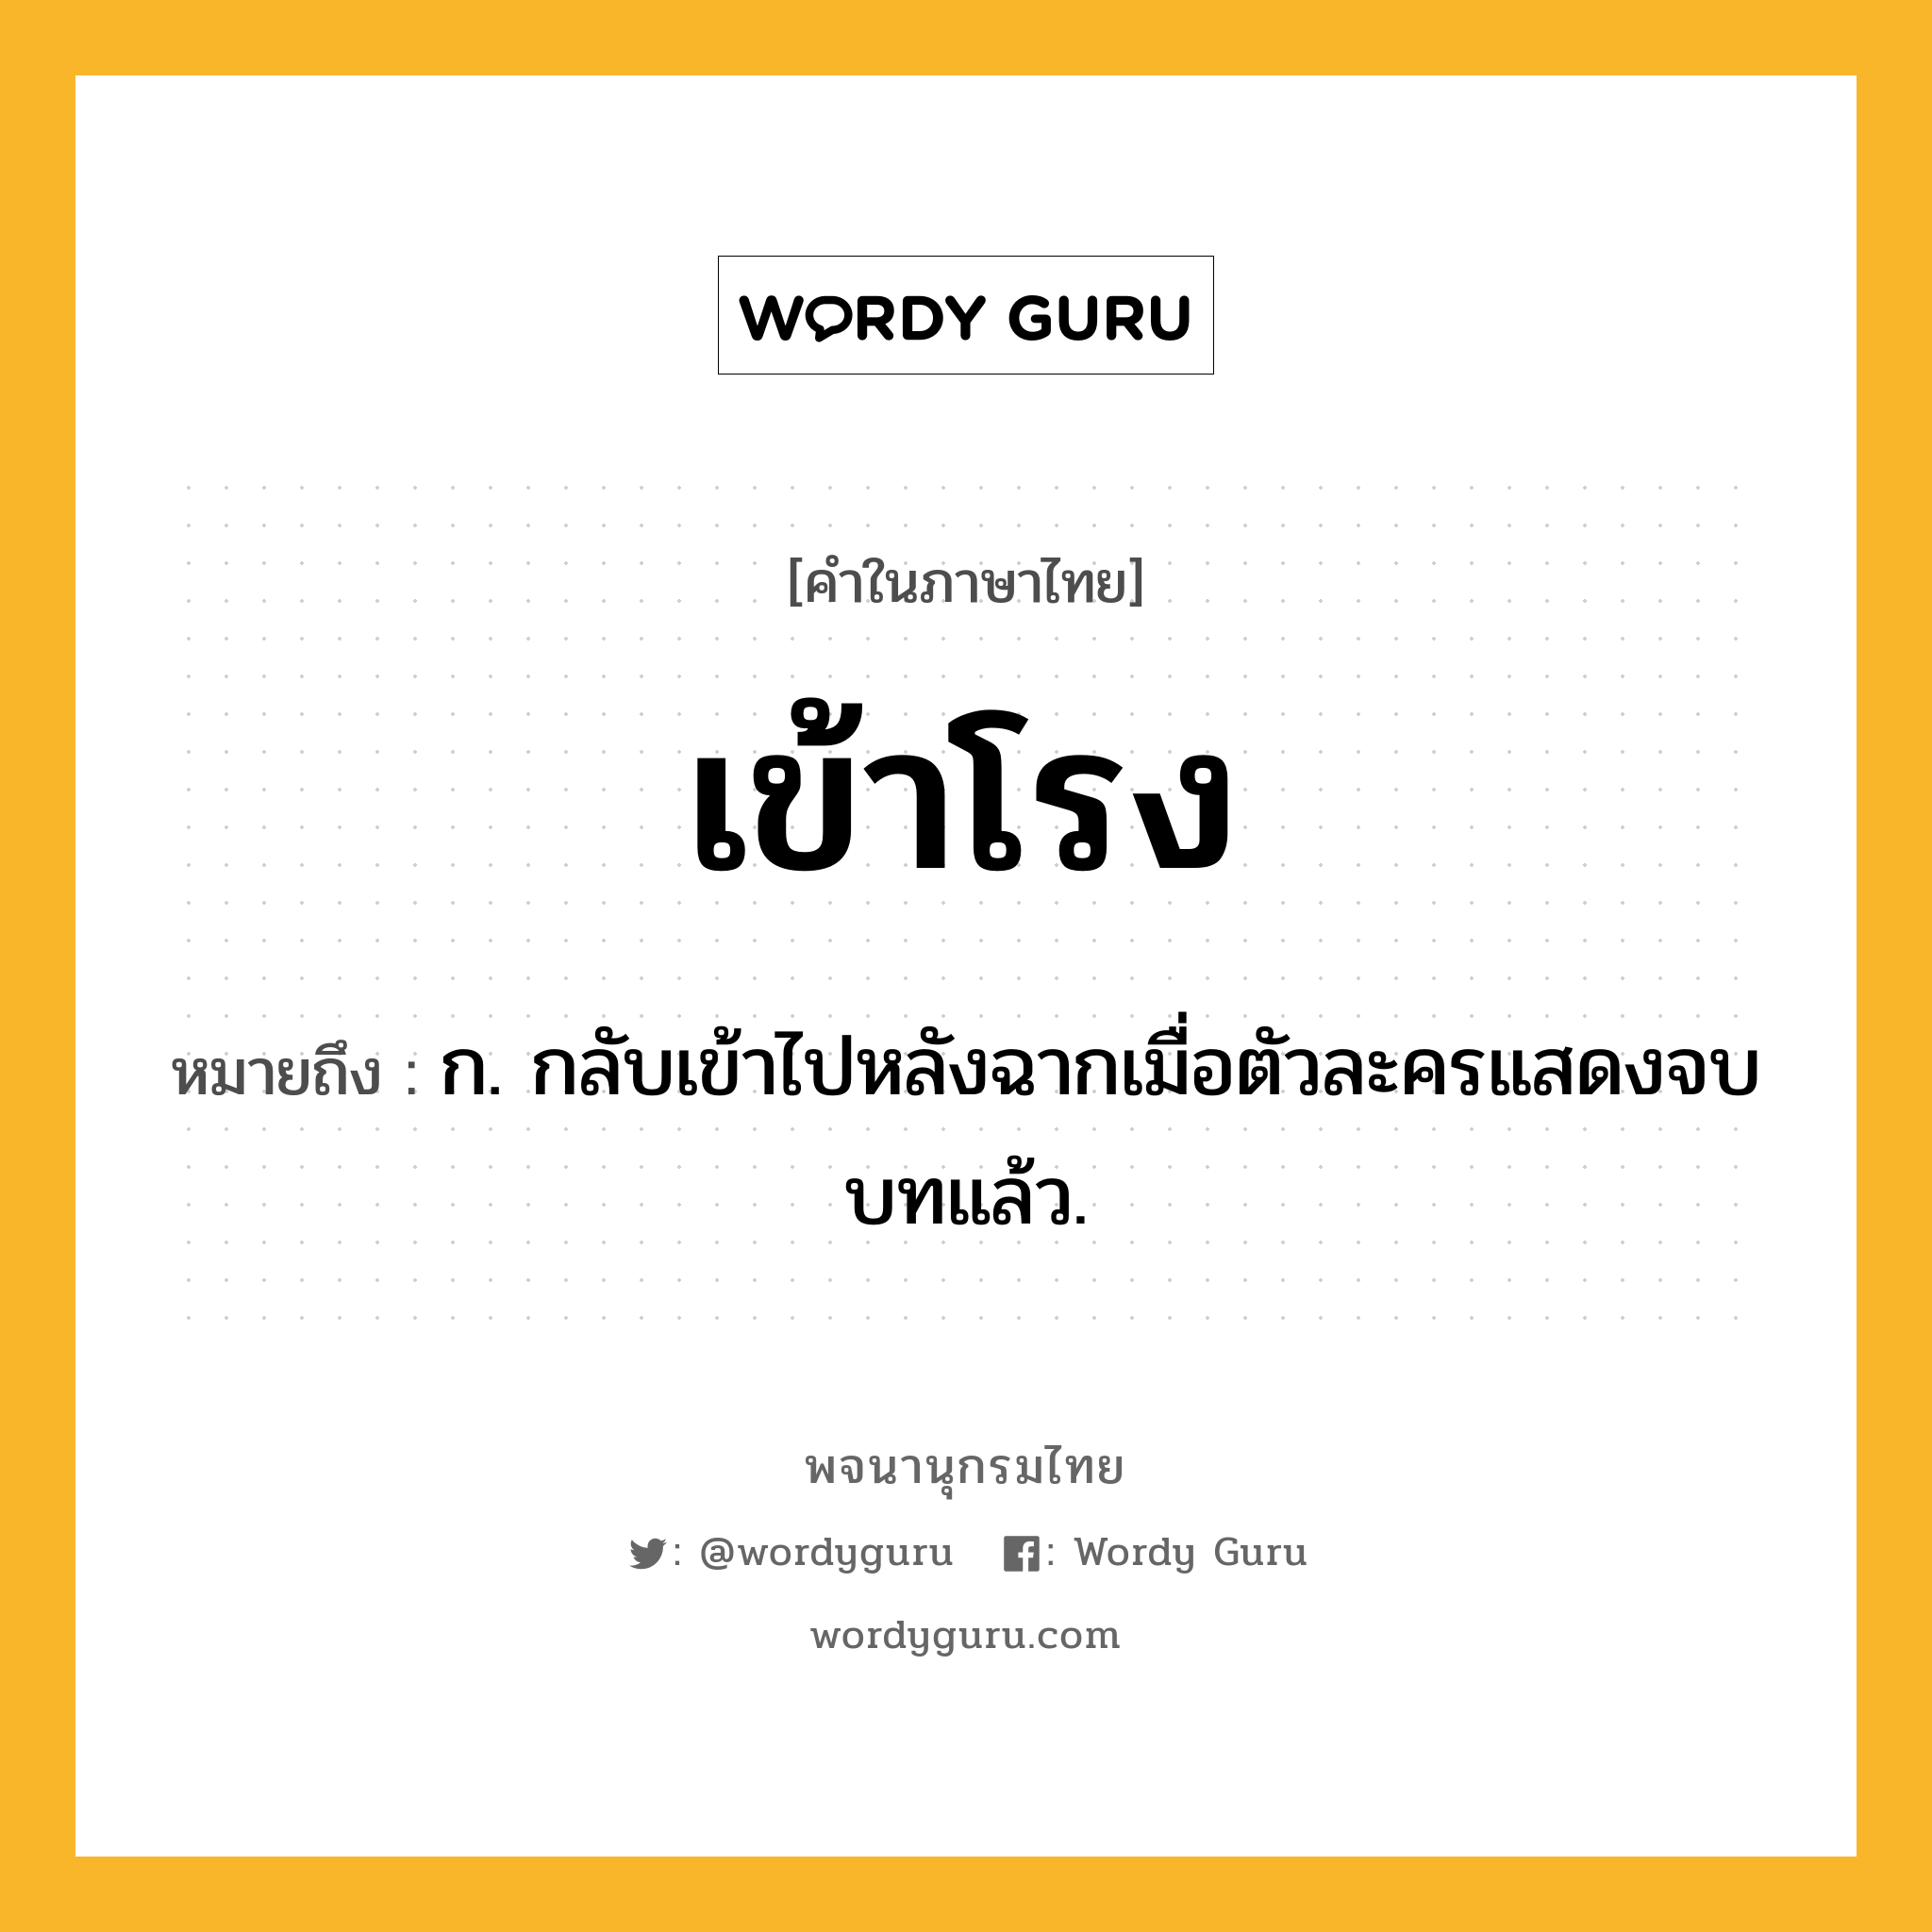 เข้าโรง ความหมาย หมายถึงอะไร?, คำในภาษาไทย เข้าโรง หมายถึง ก. กลับเข้าไปหลังฉากเมื่อตัวละครแสดงจบบทแล้ว.